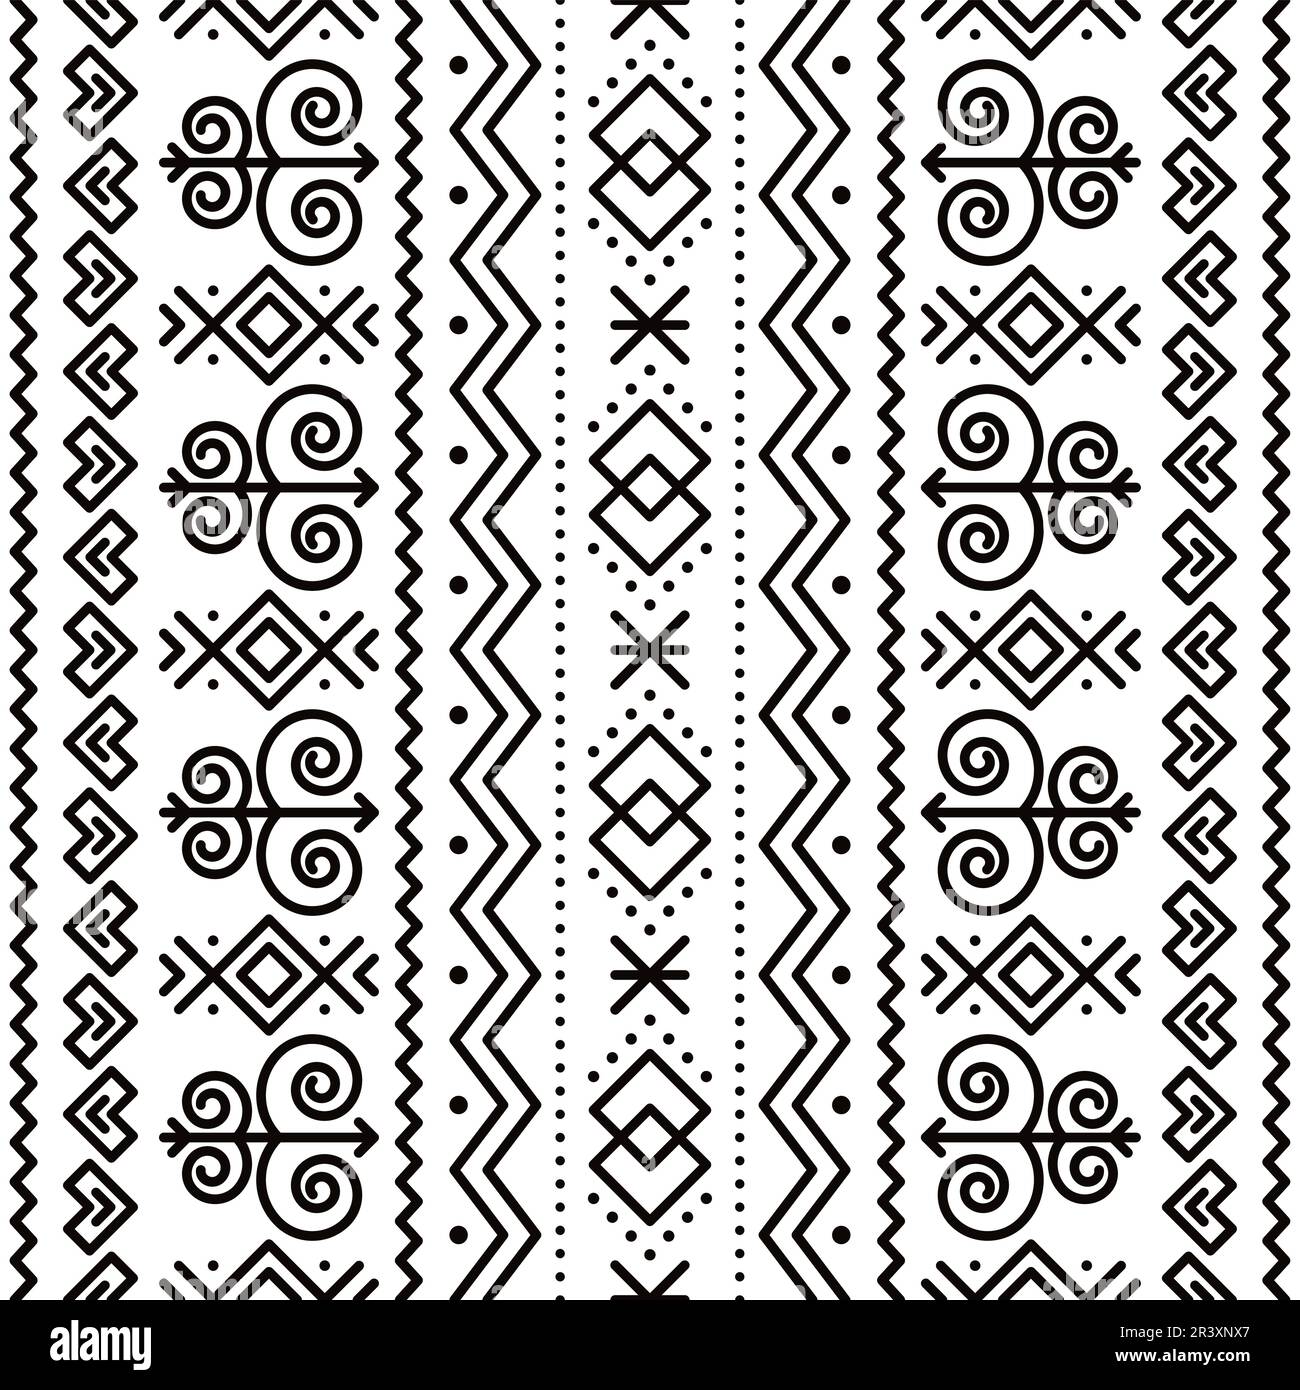 Slovaque tribal folk art vecteur sans couture modèle géométrique motif - vertical deisgn inspiré de l'art peint traditionnel du village Cicman Illustration de Vecteur